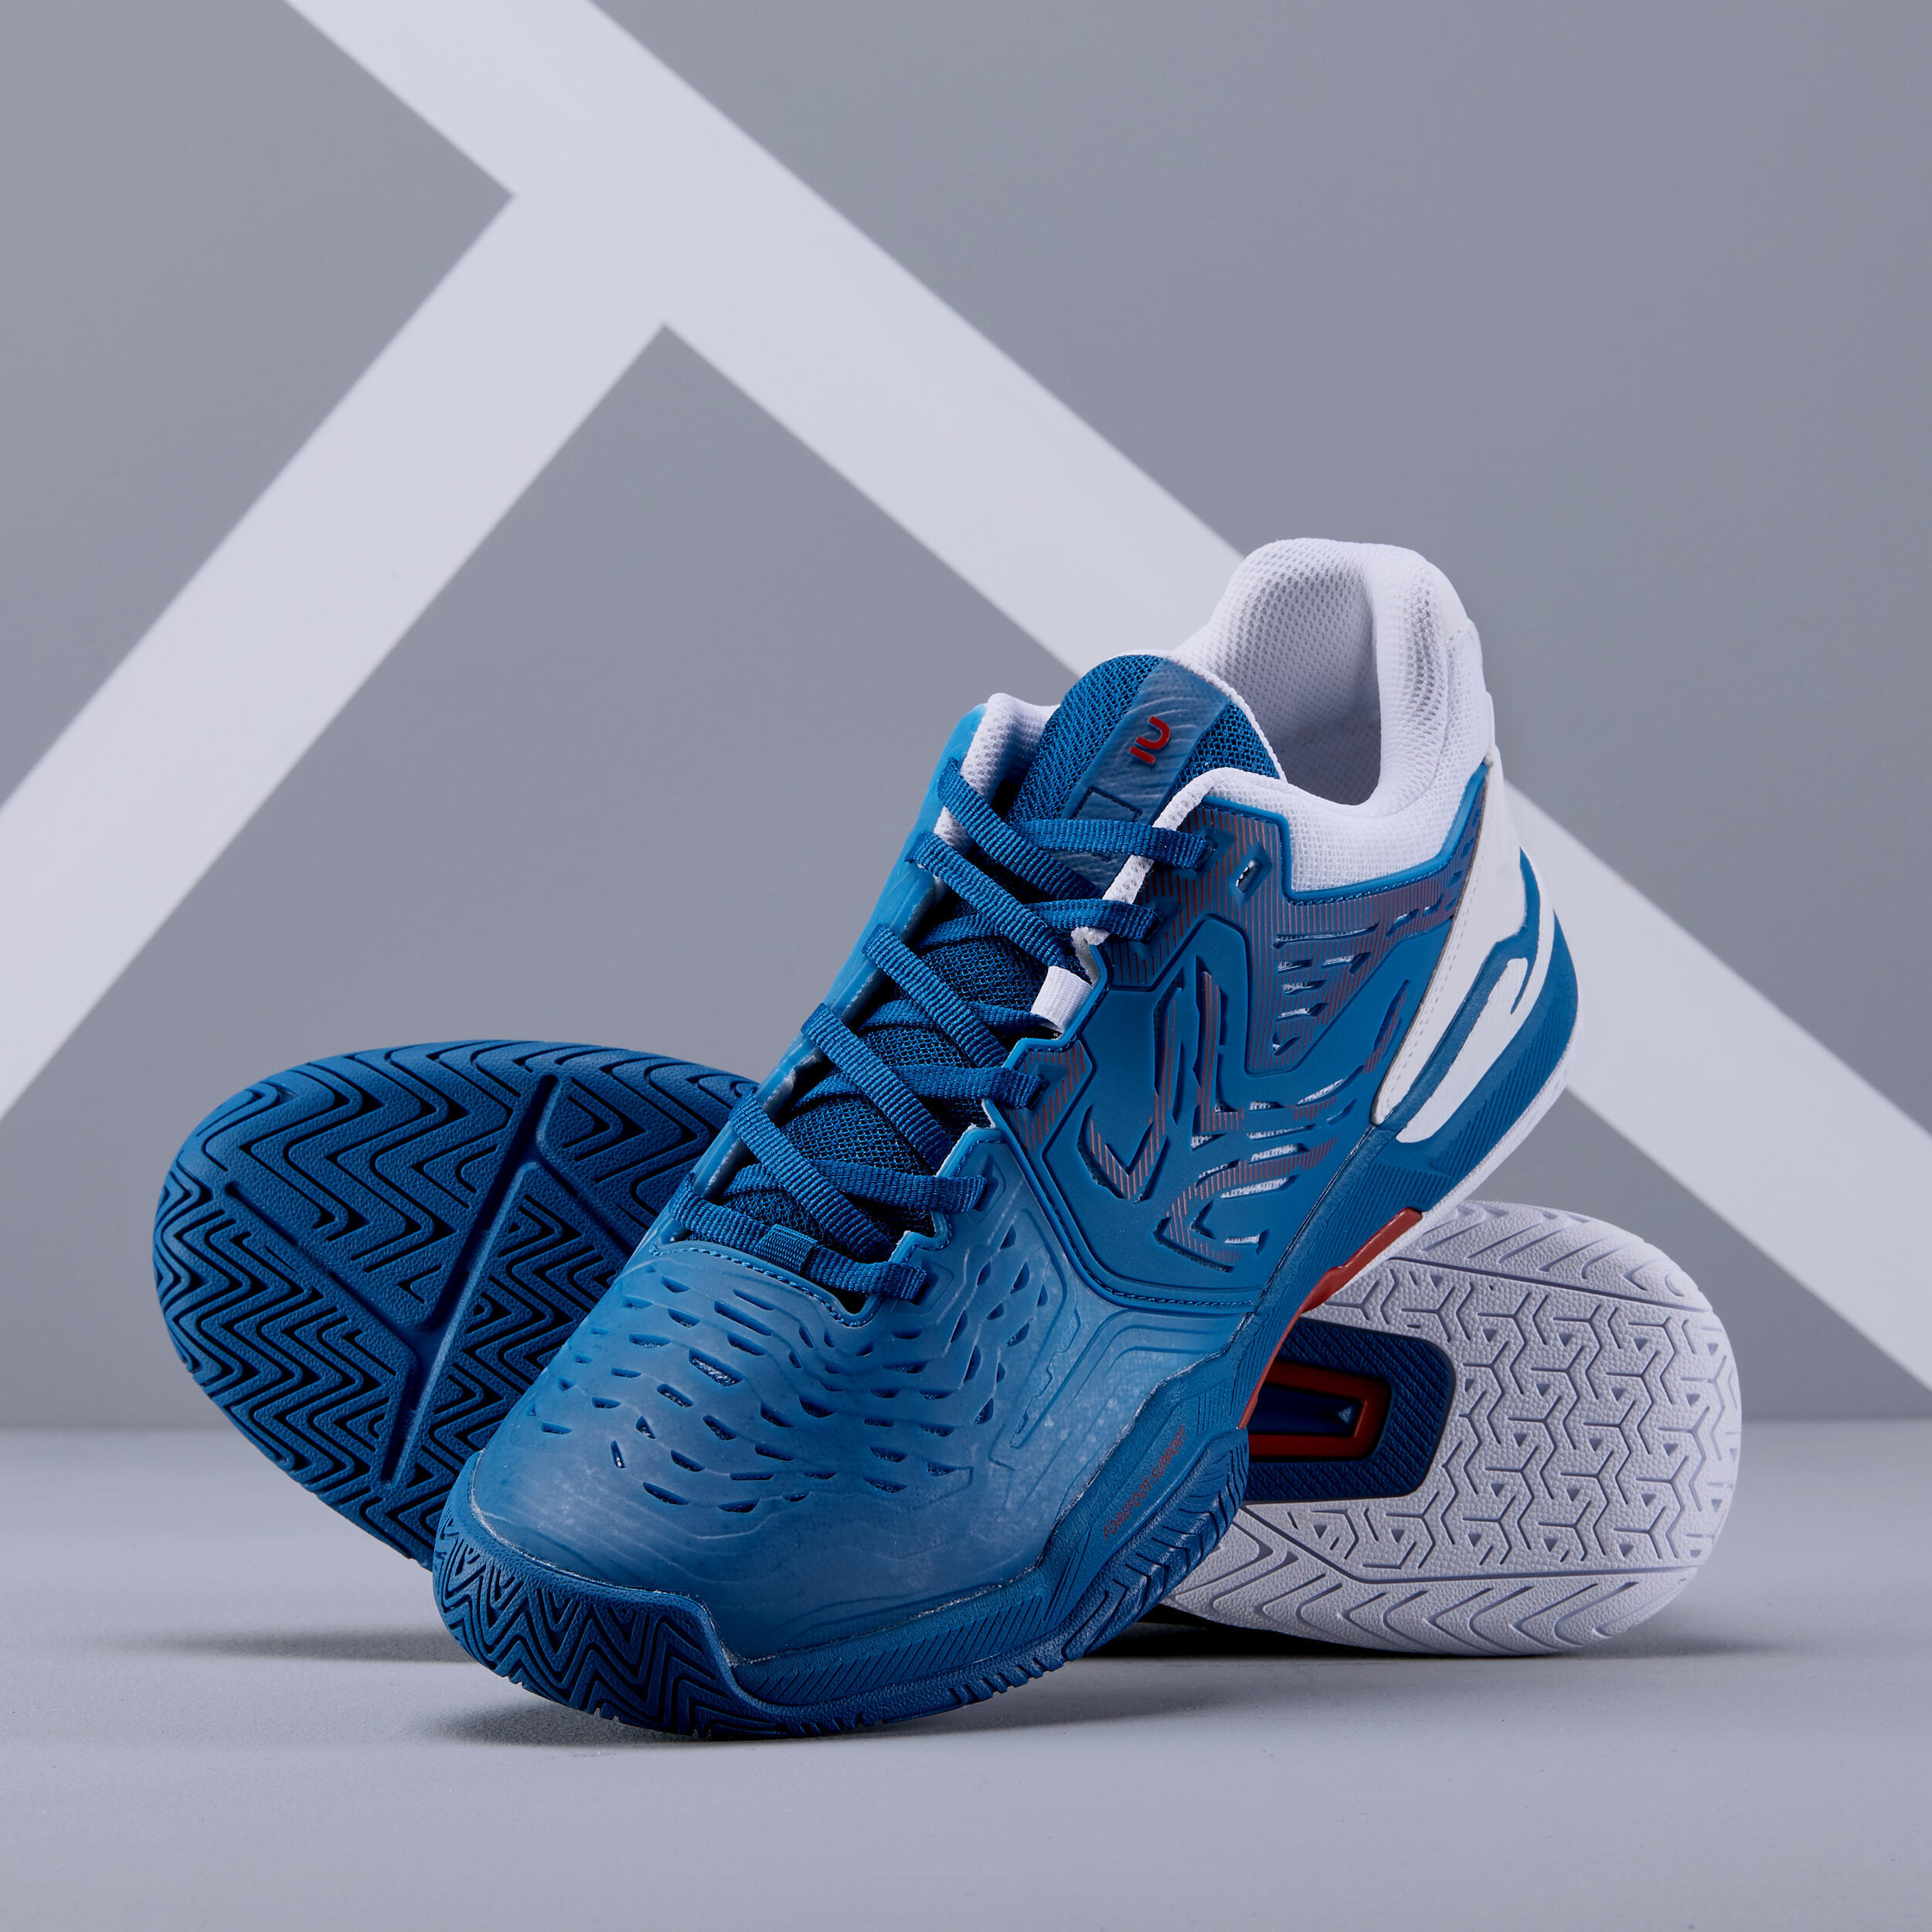 Men's Multi-Court Tennis Shoes TS560 - Blue 4/6